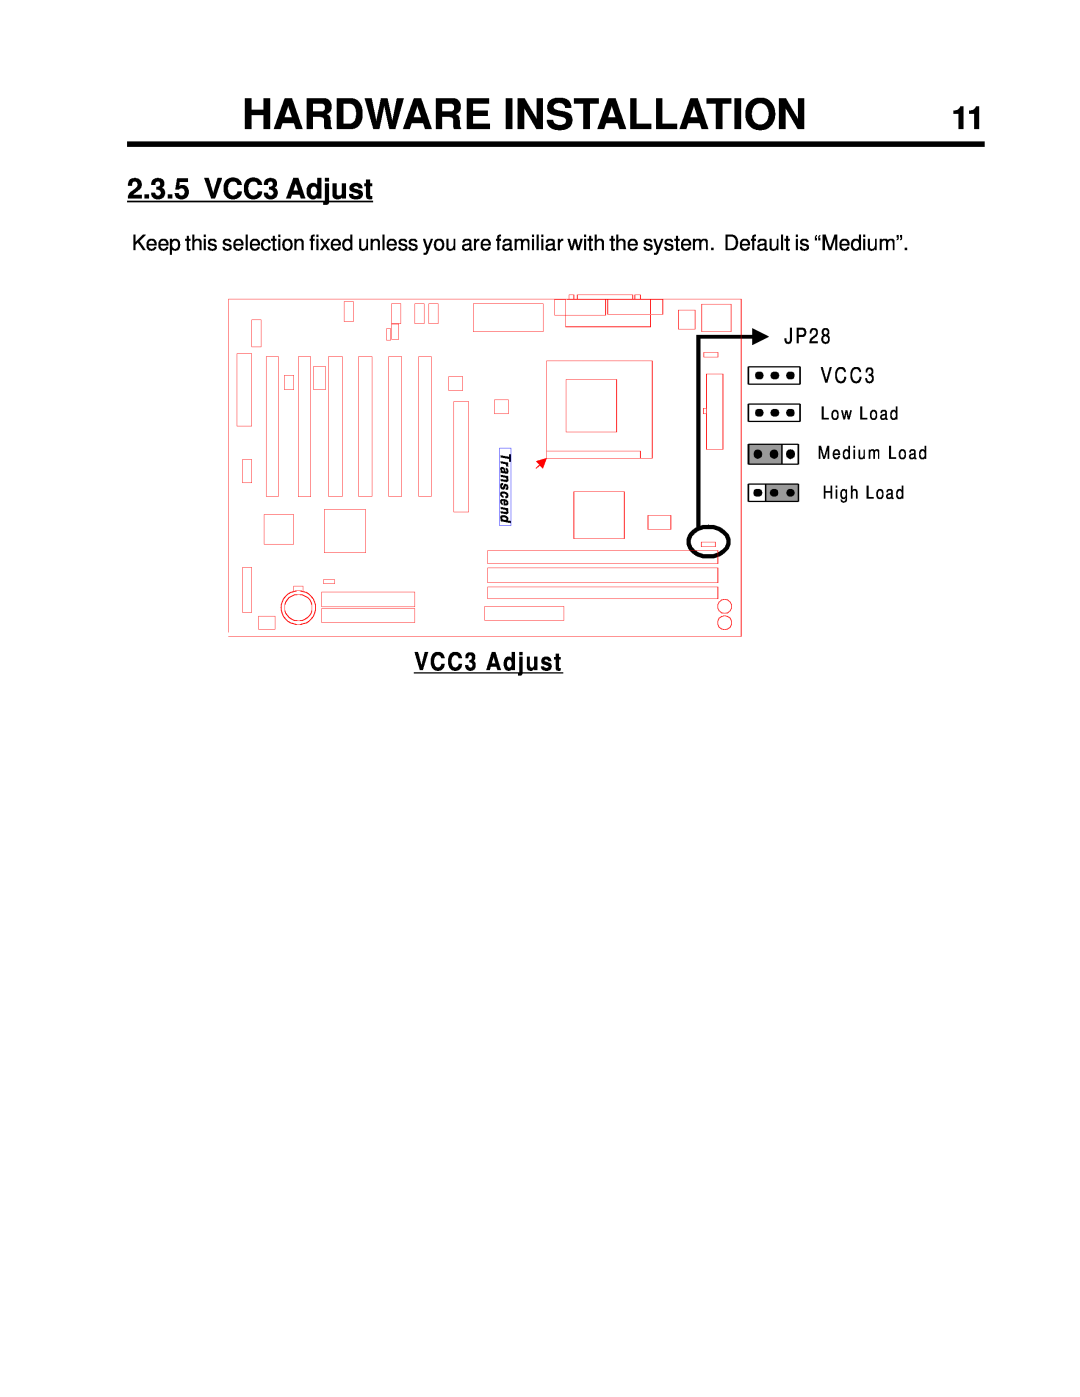 Intel TS-ASP3 user manual 2.3.5 VCC3 Adjust, Hardware Installation, ransc 